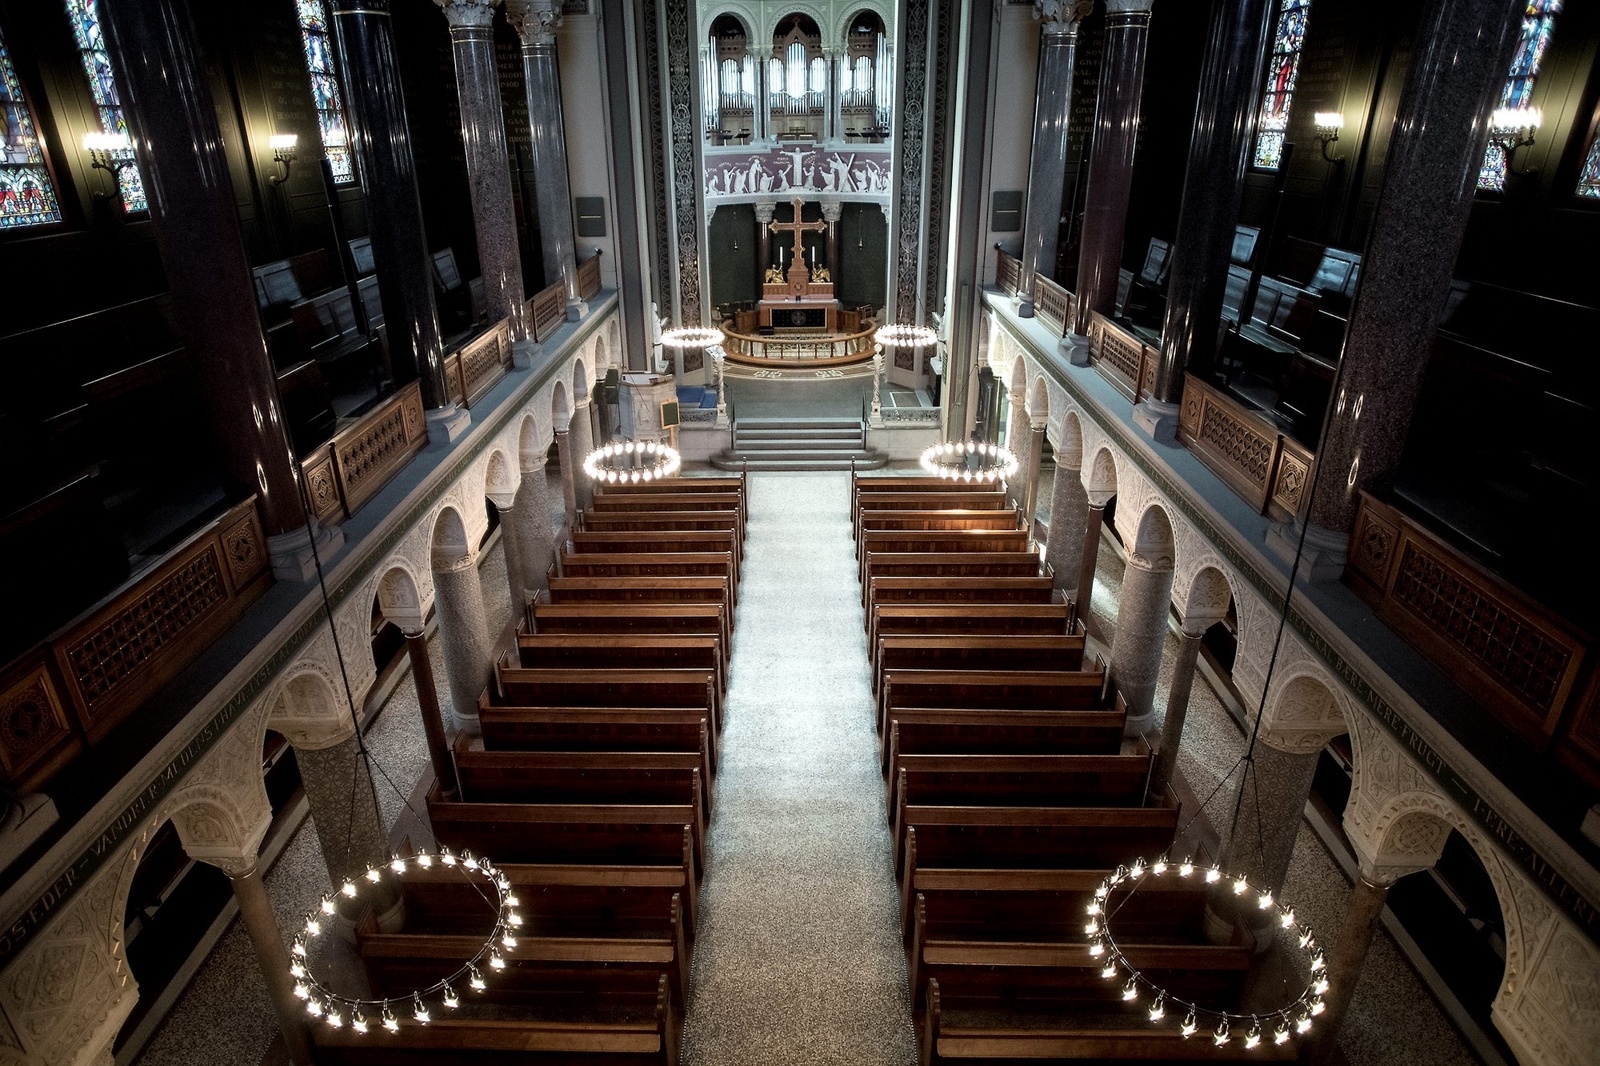 Kyrkan ska ha så varierad dekoration som möjligt allt enligt Carl Jacobsens vilja.
Foto: Jörgen Johansson